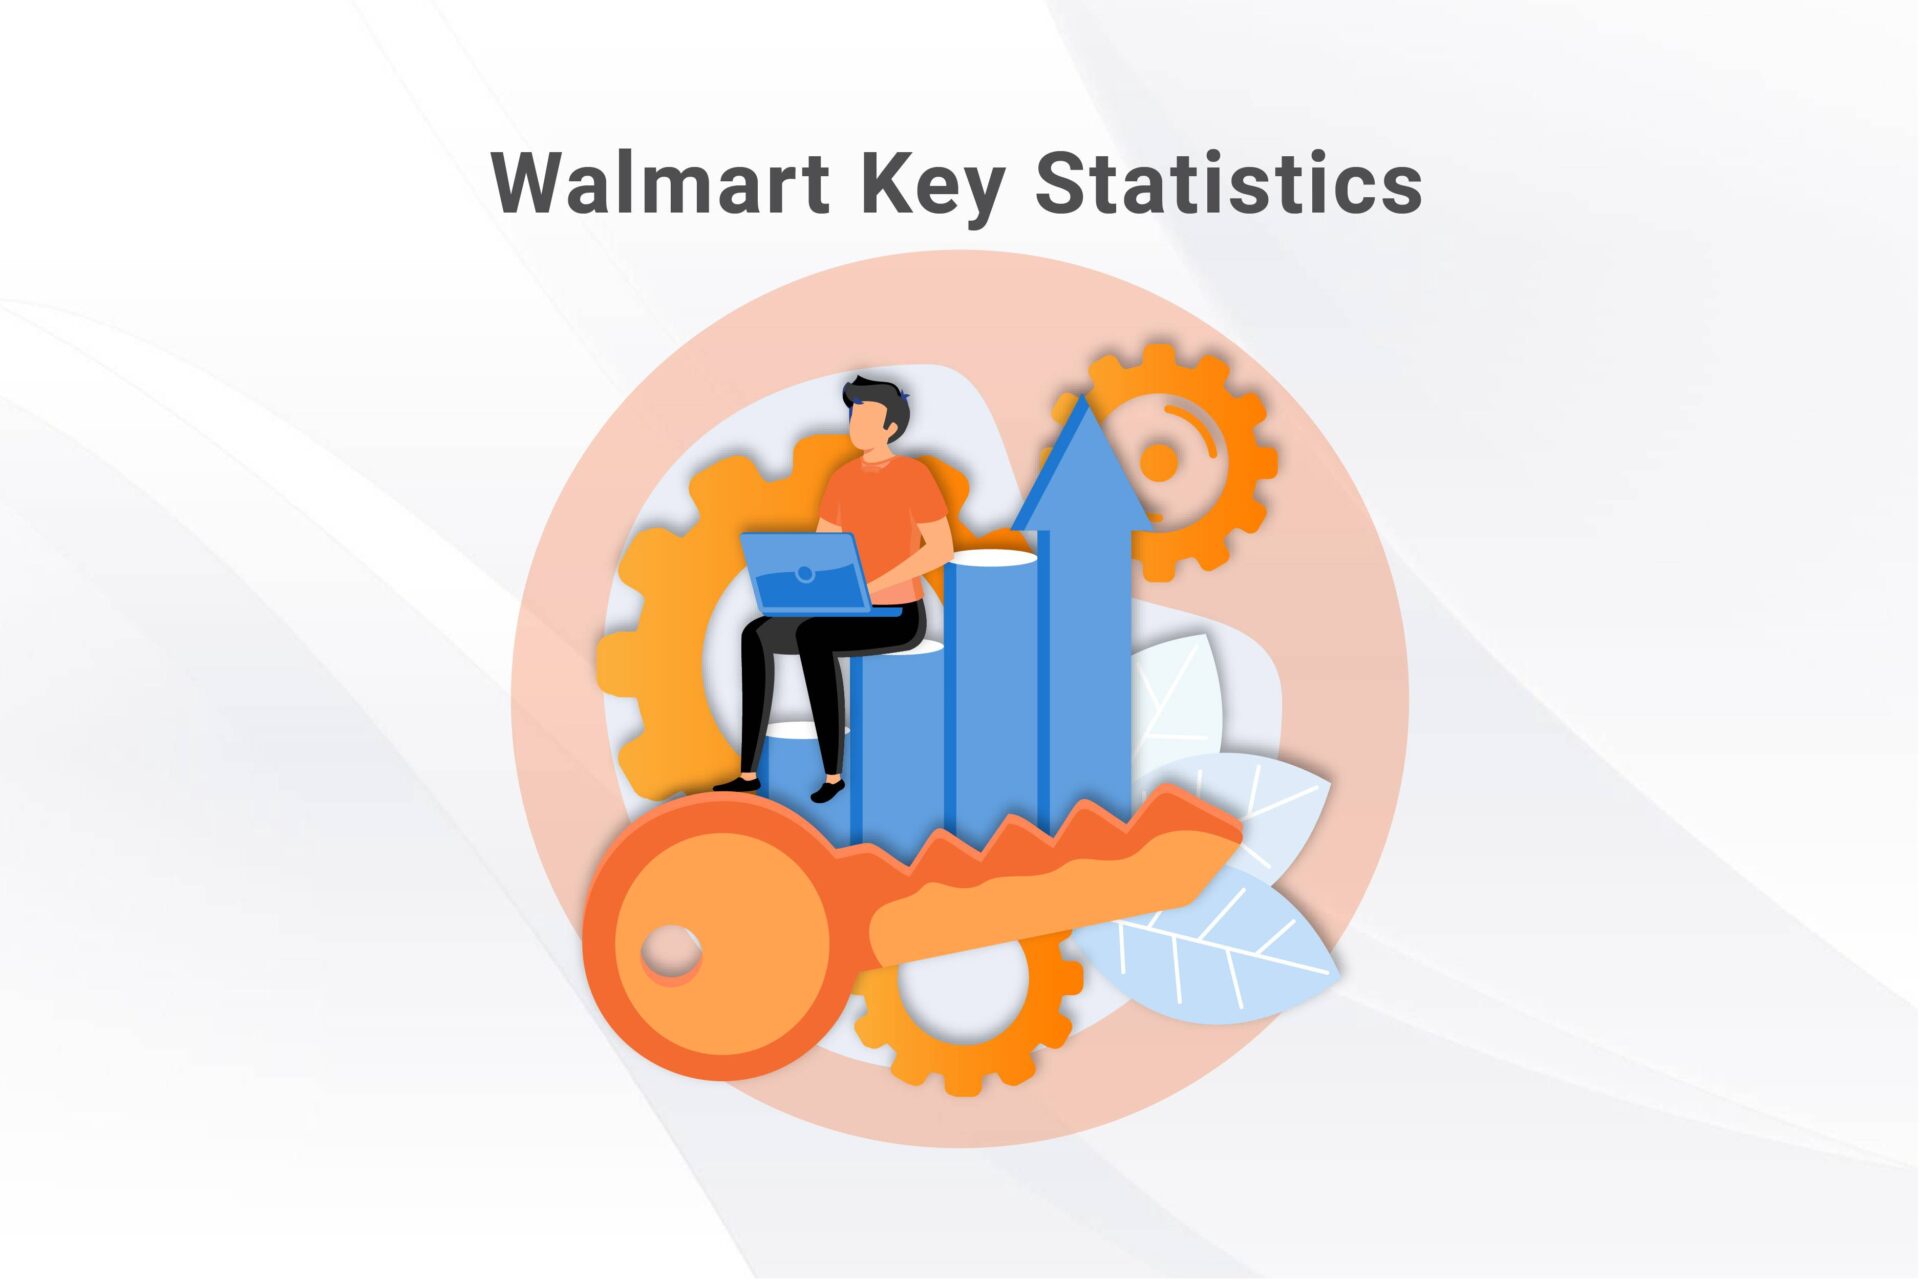 Key Statistics about Walmart Marketplace